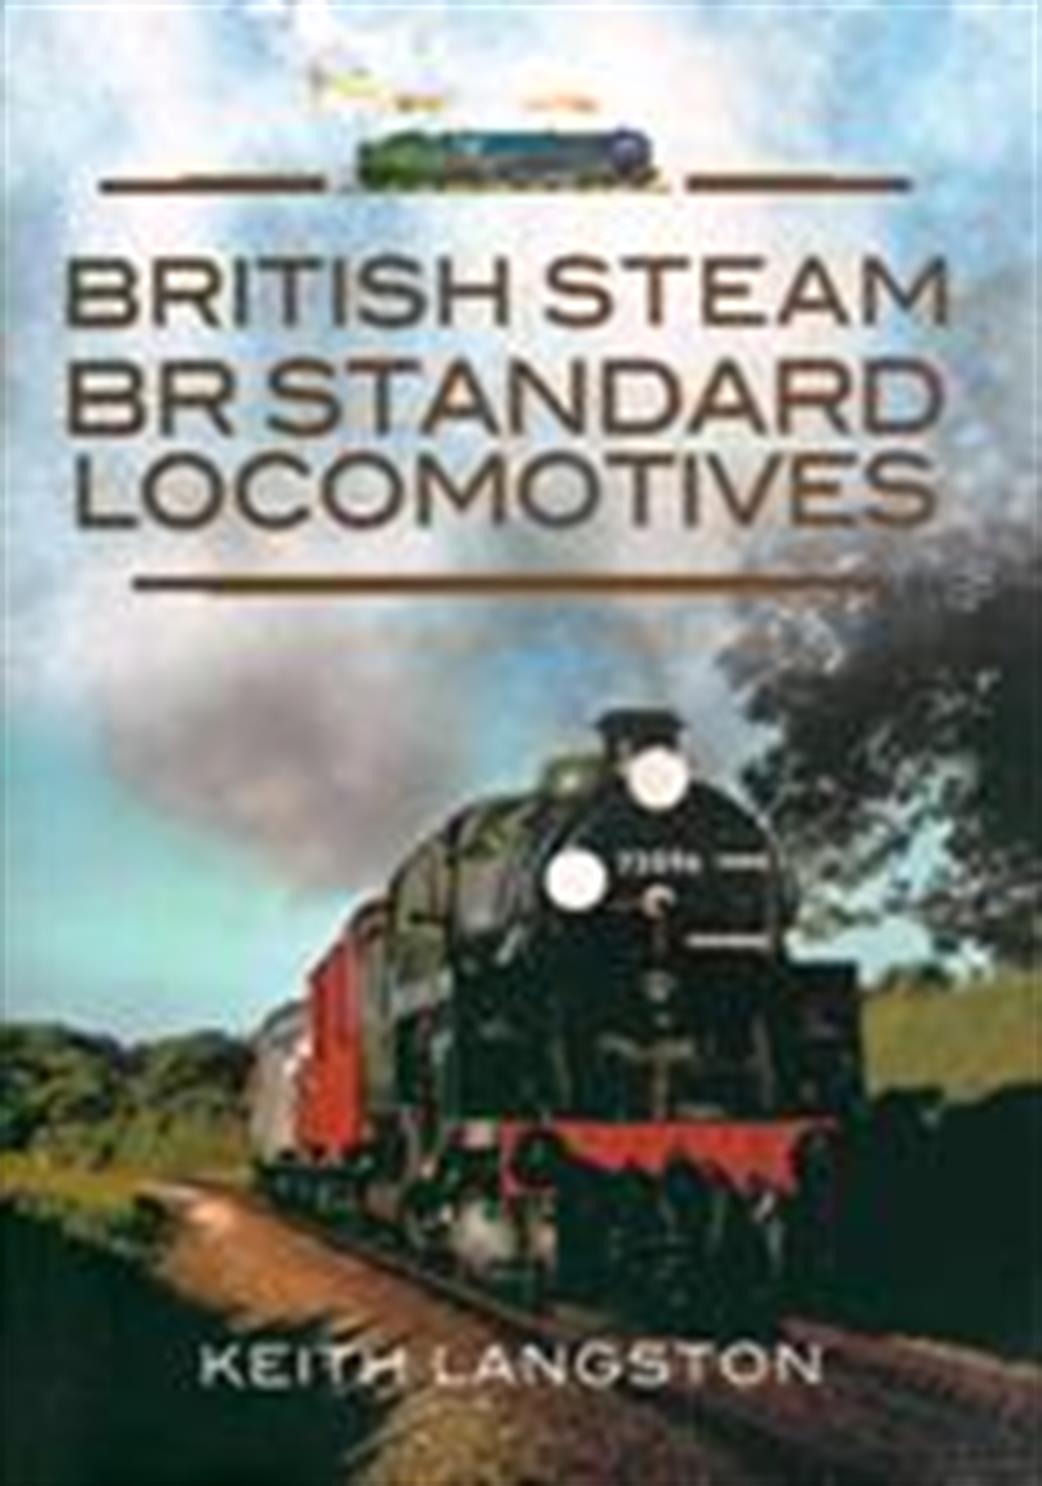 9781845631468 British Steam BR Standard Locomotives by Keith Langston